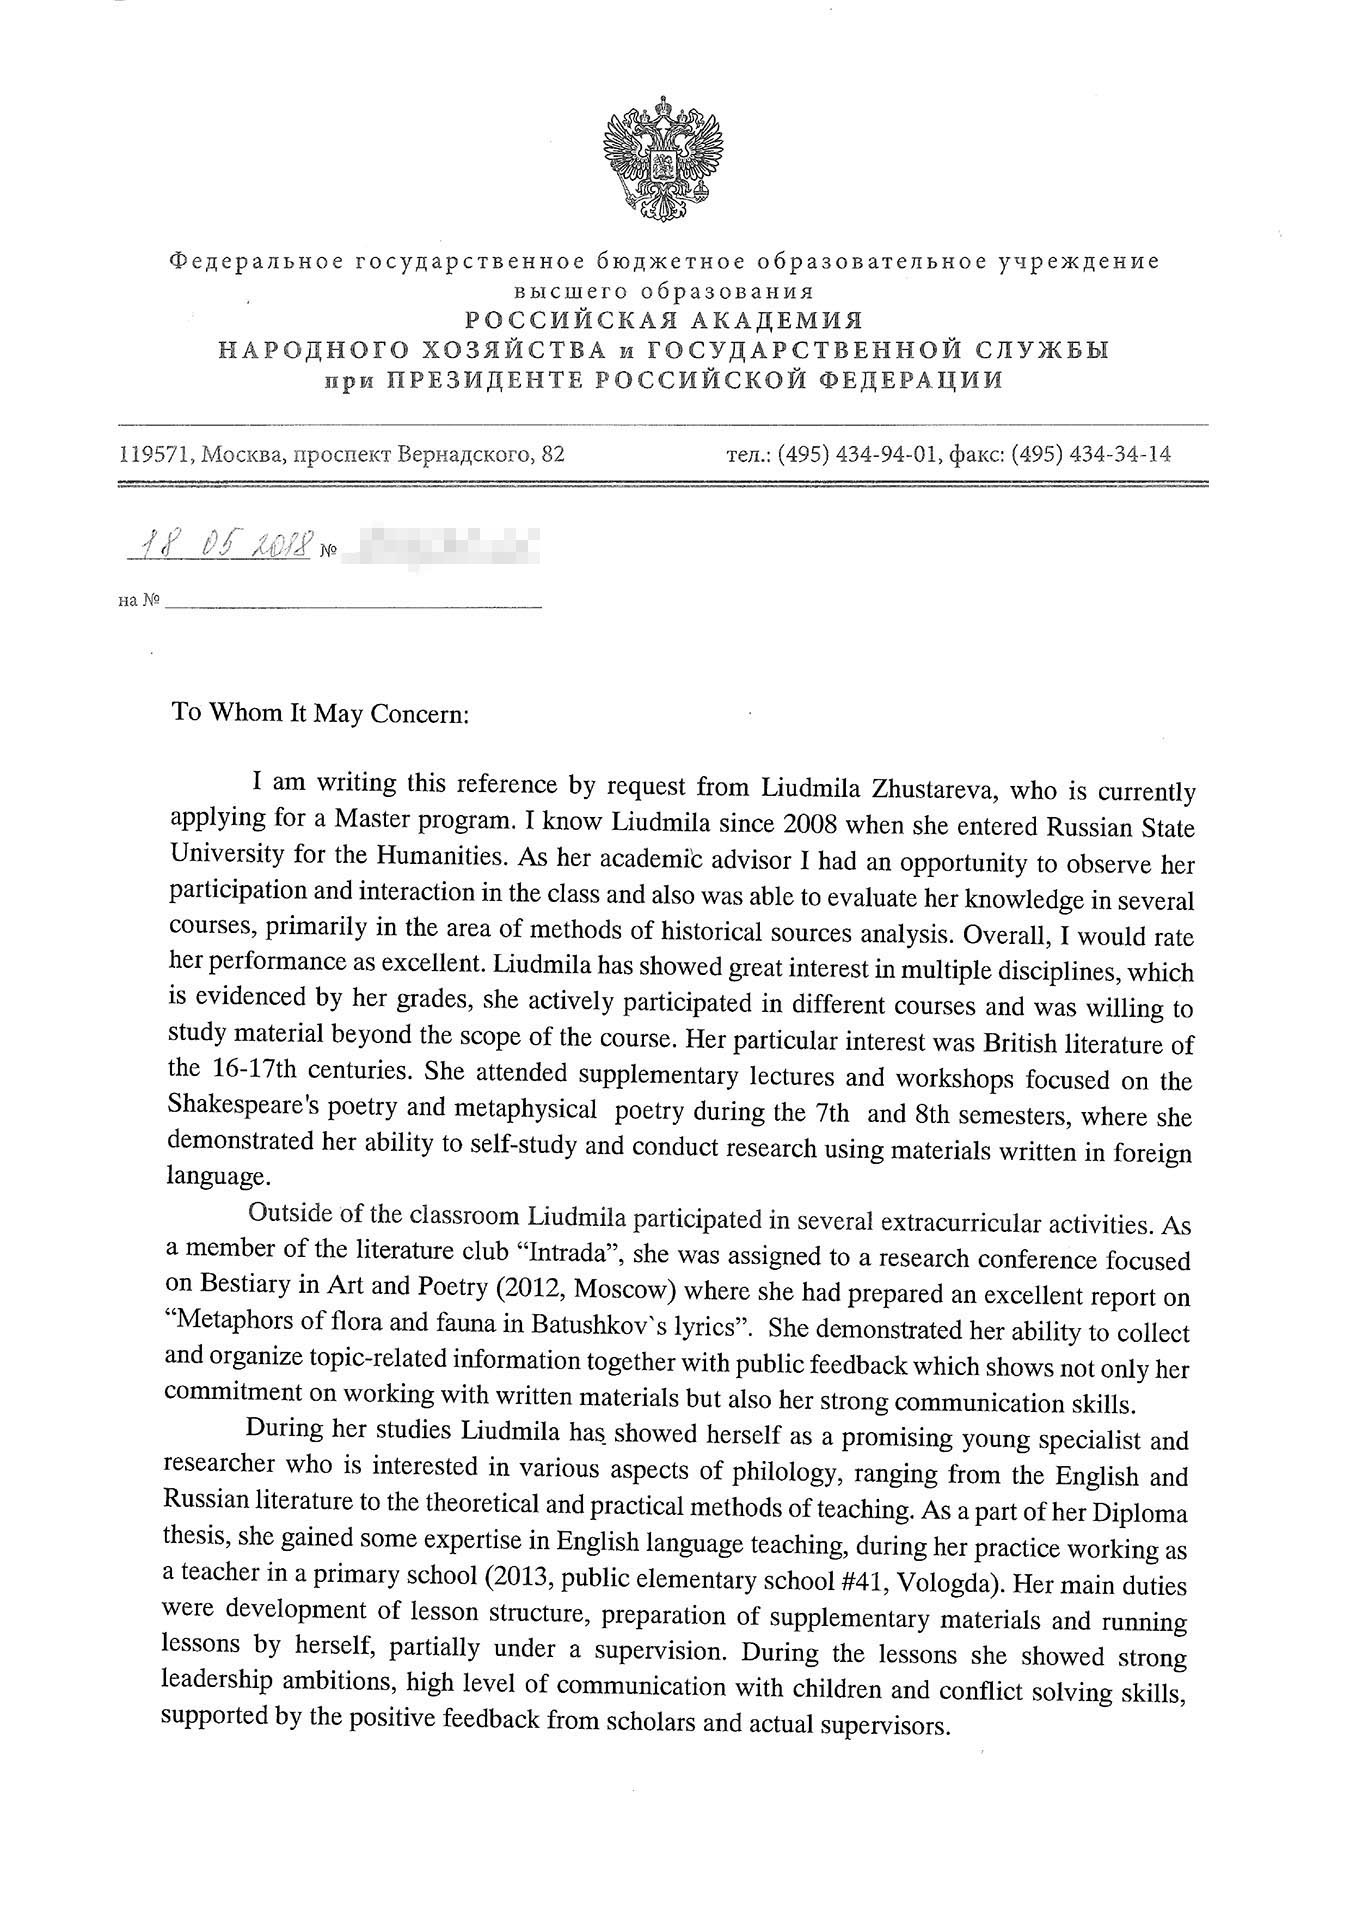 Рекомендательное письмо в университет от бывшего заместителя декана филологического факультета РГГУ